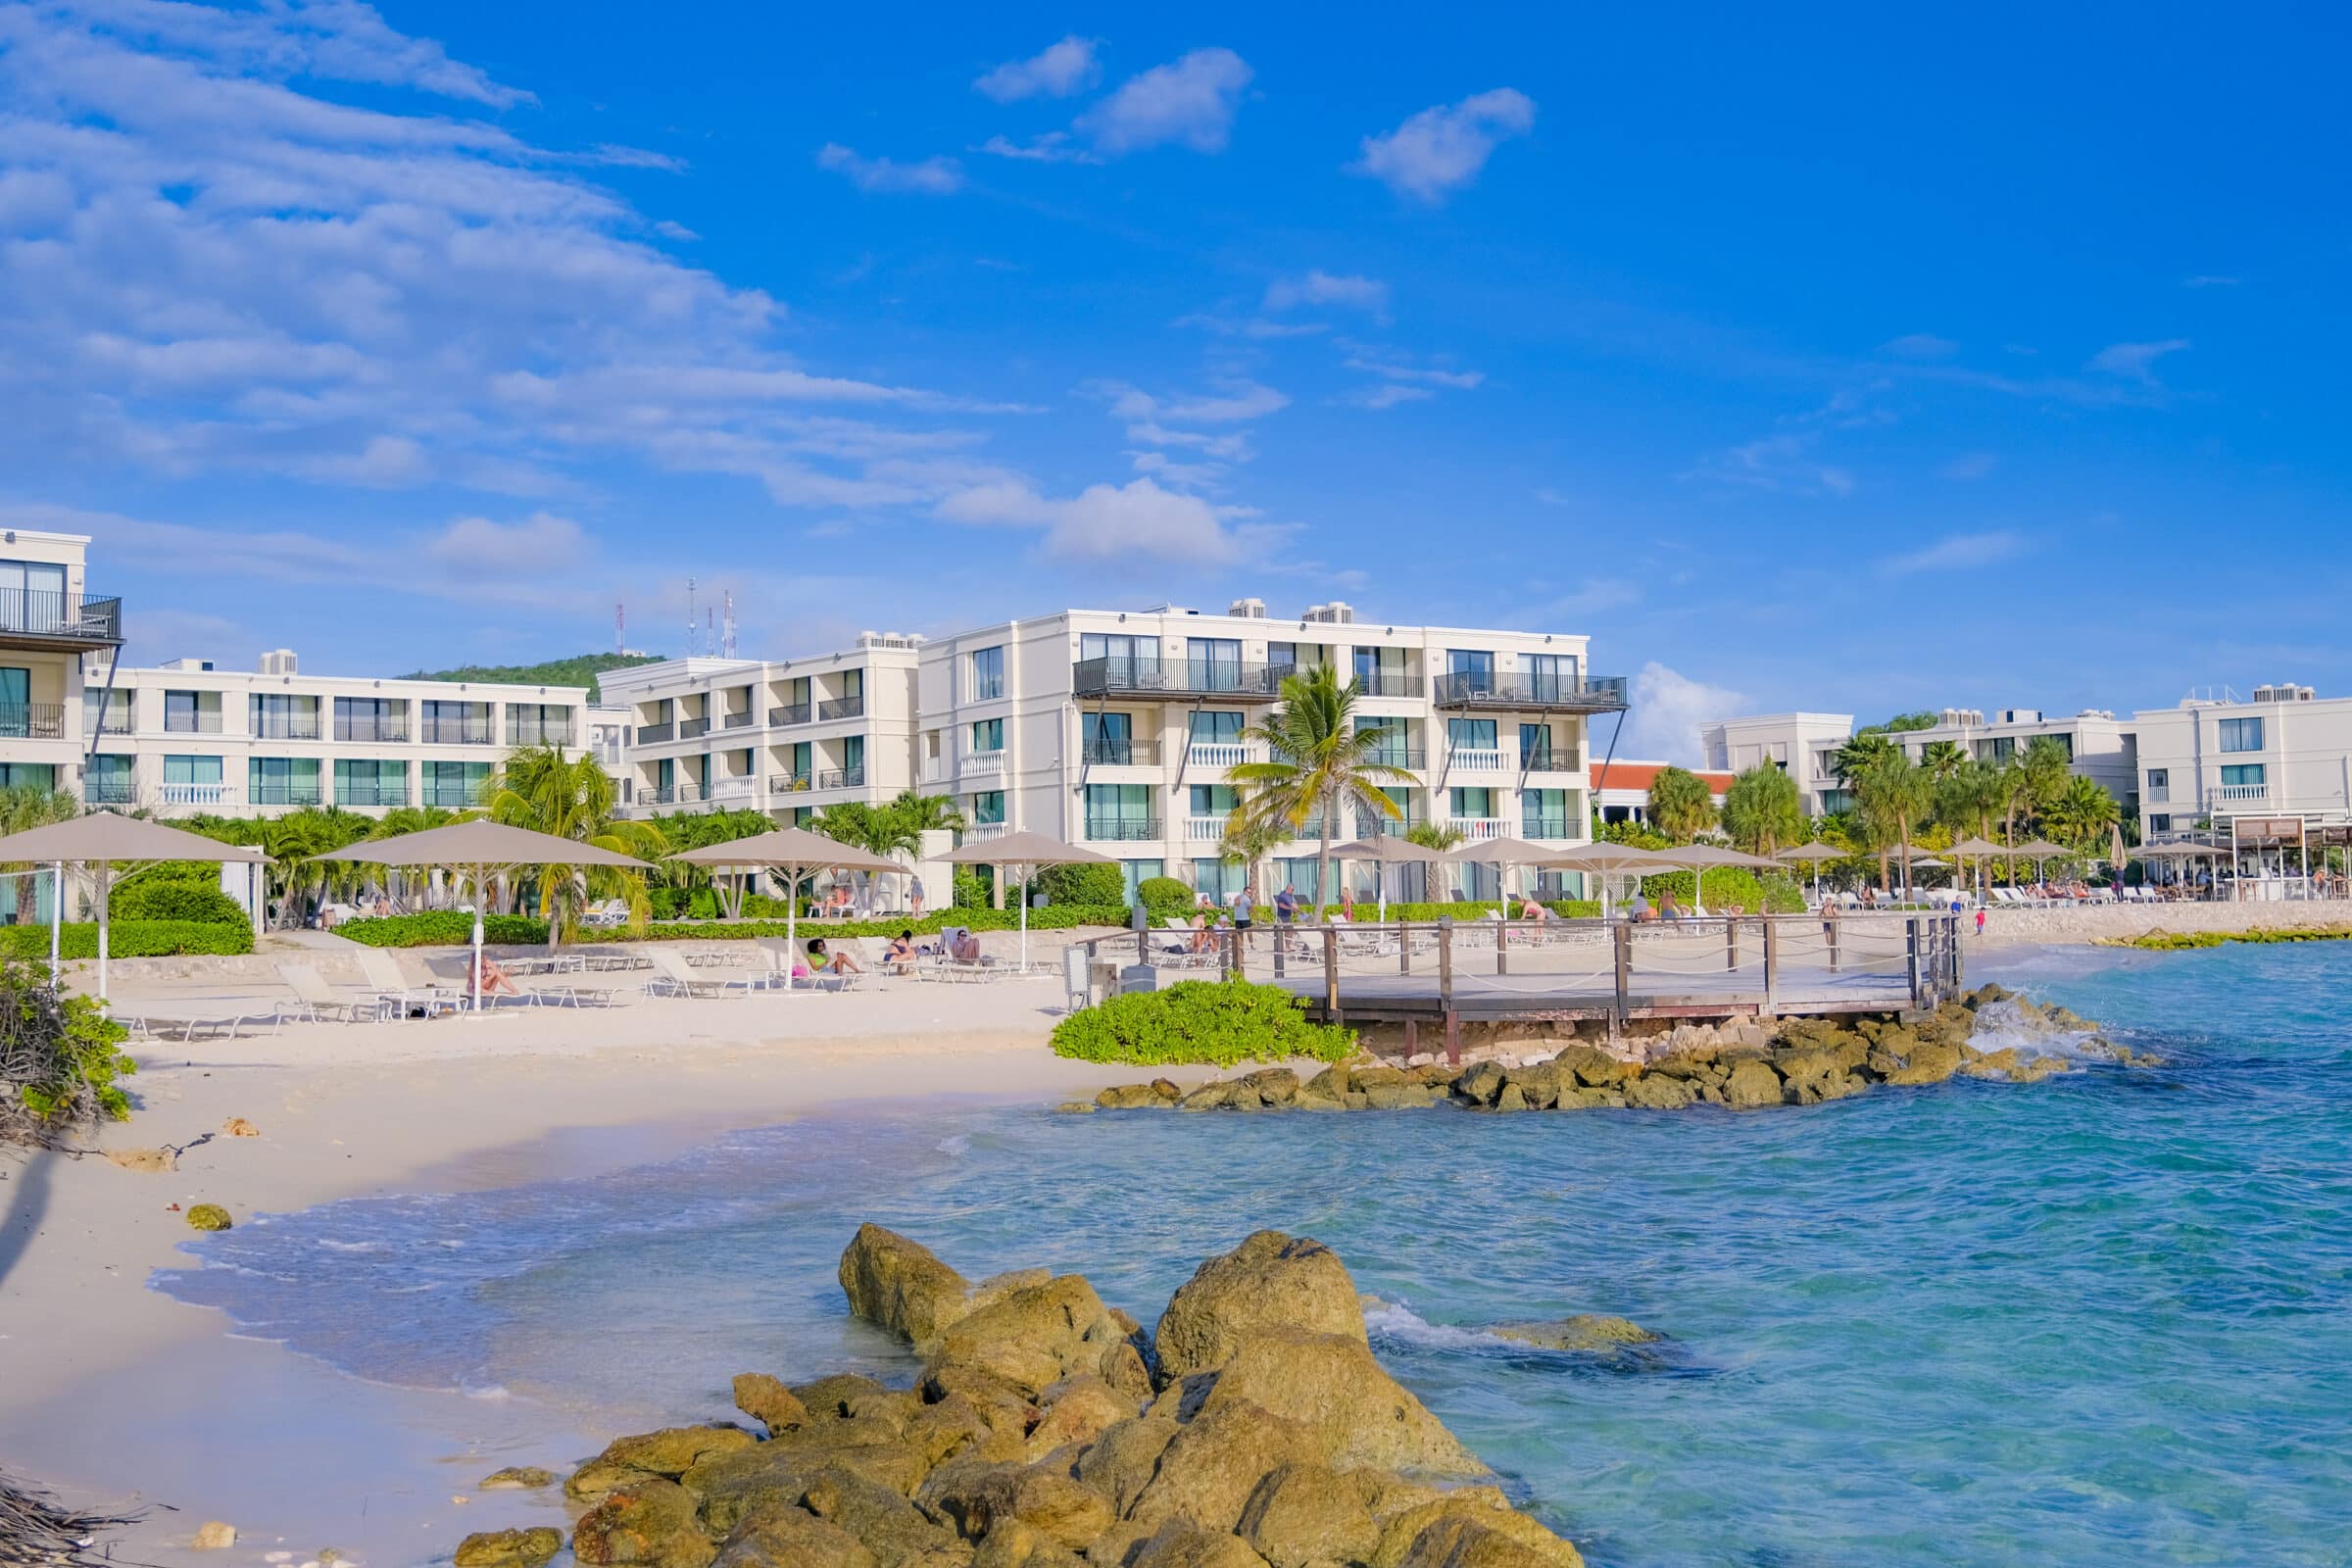 Het strand van Curaçao Marriott Beach Resort